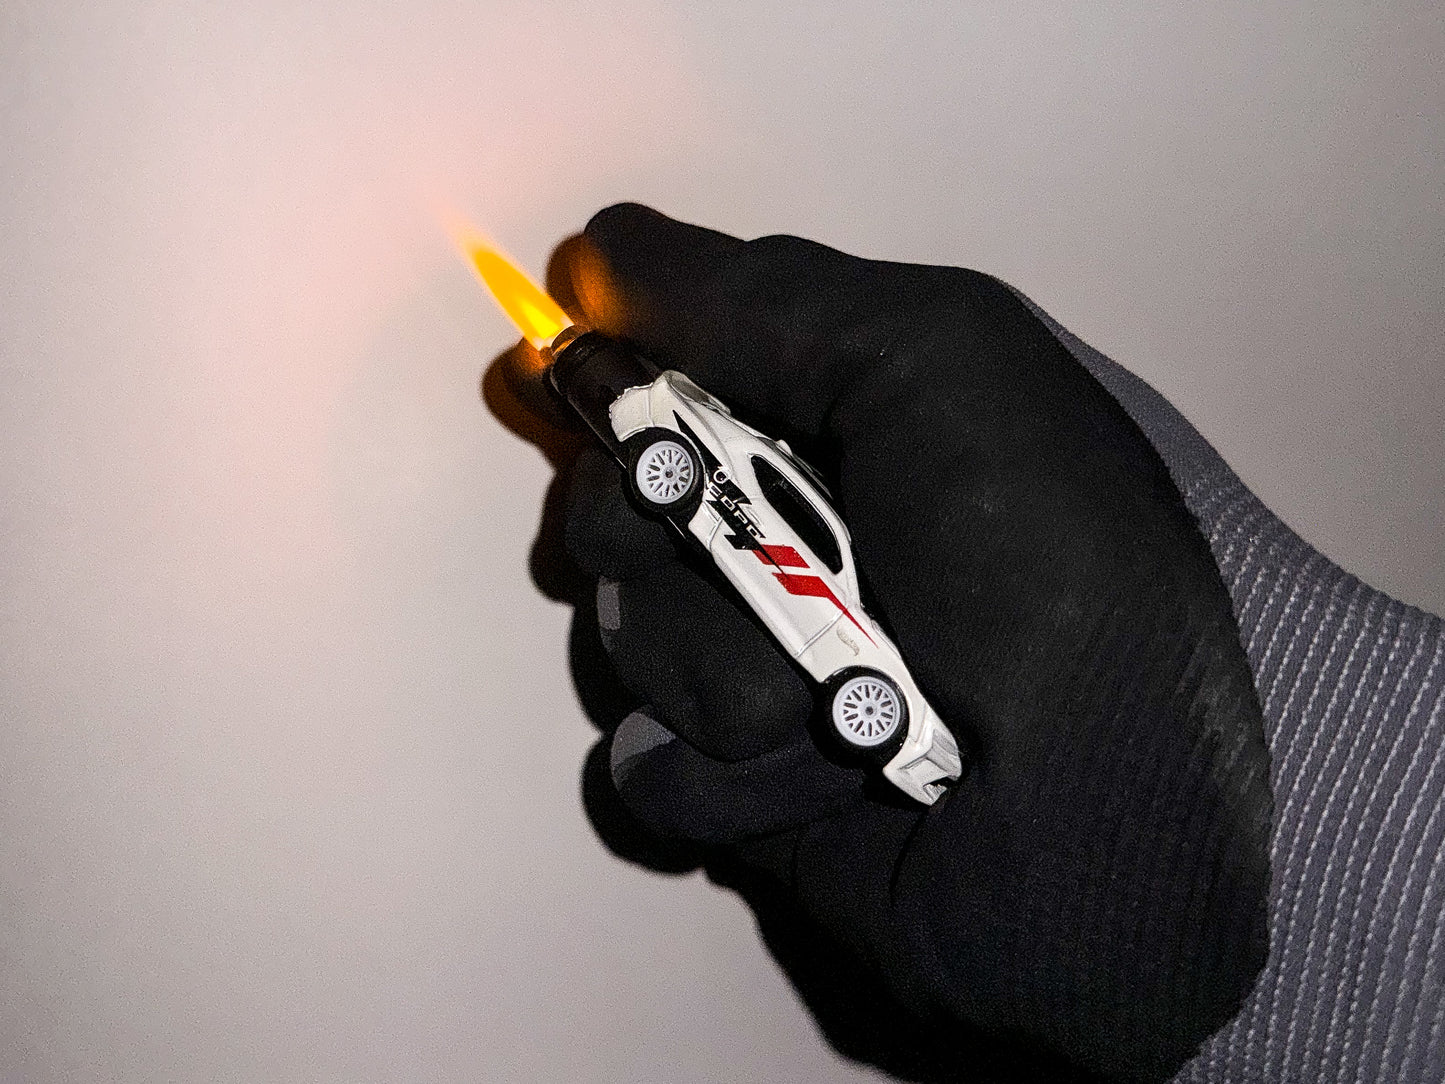 Copo Camaro Refillable Lighter